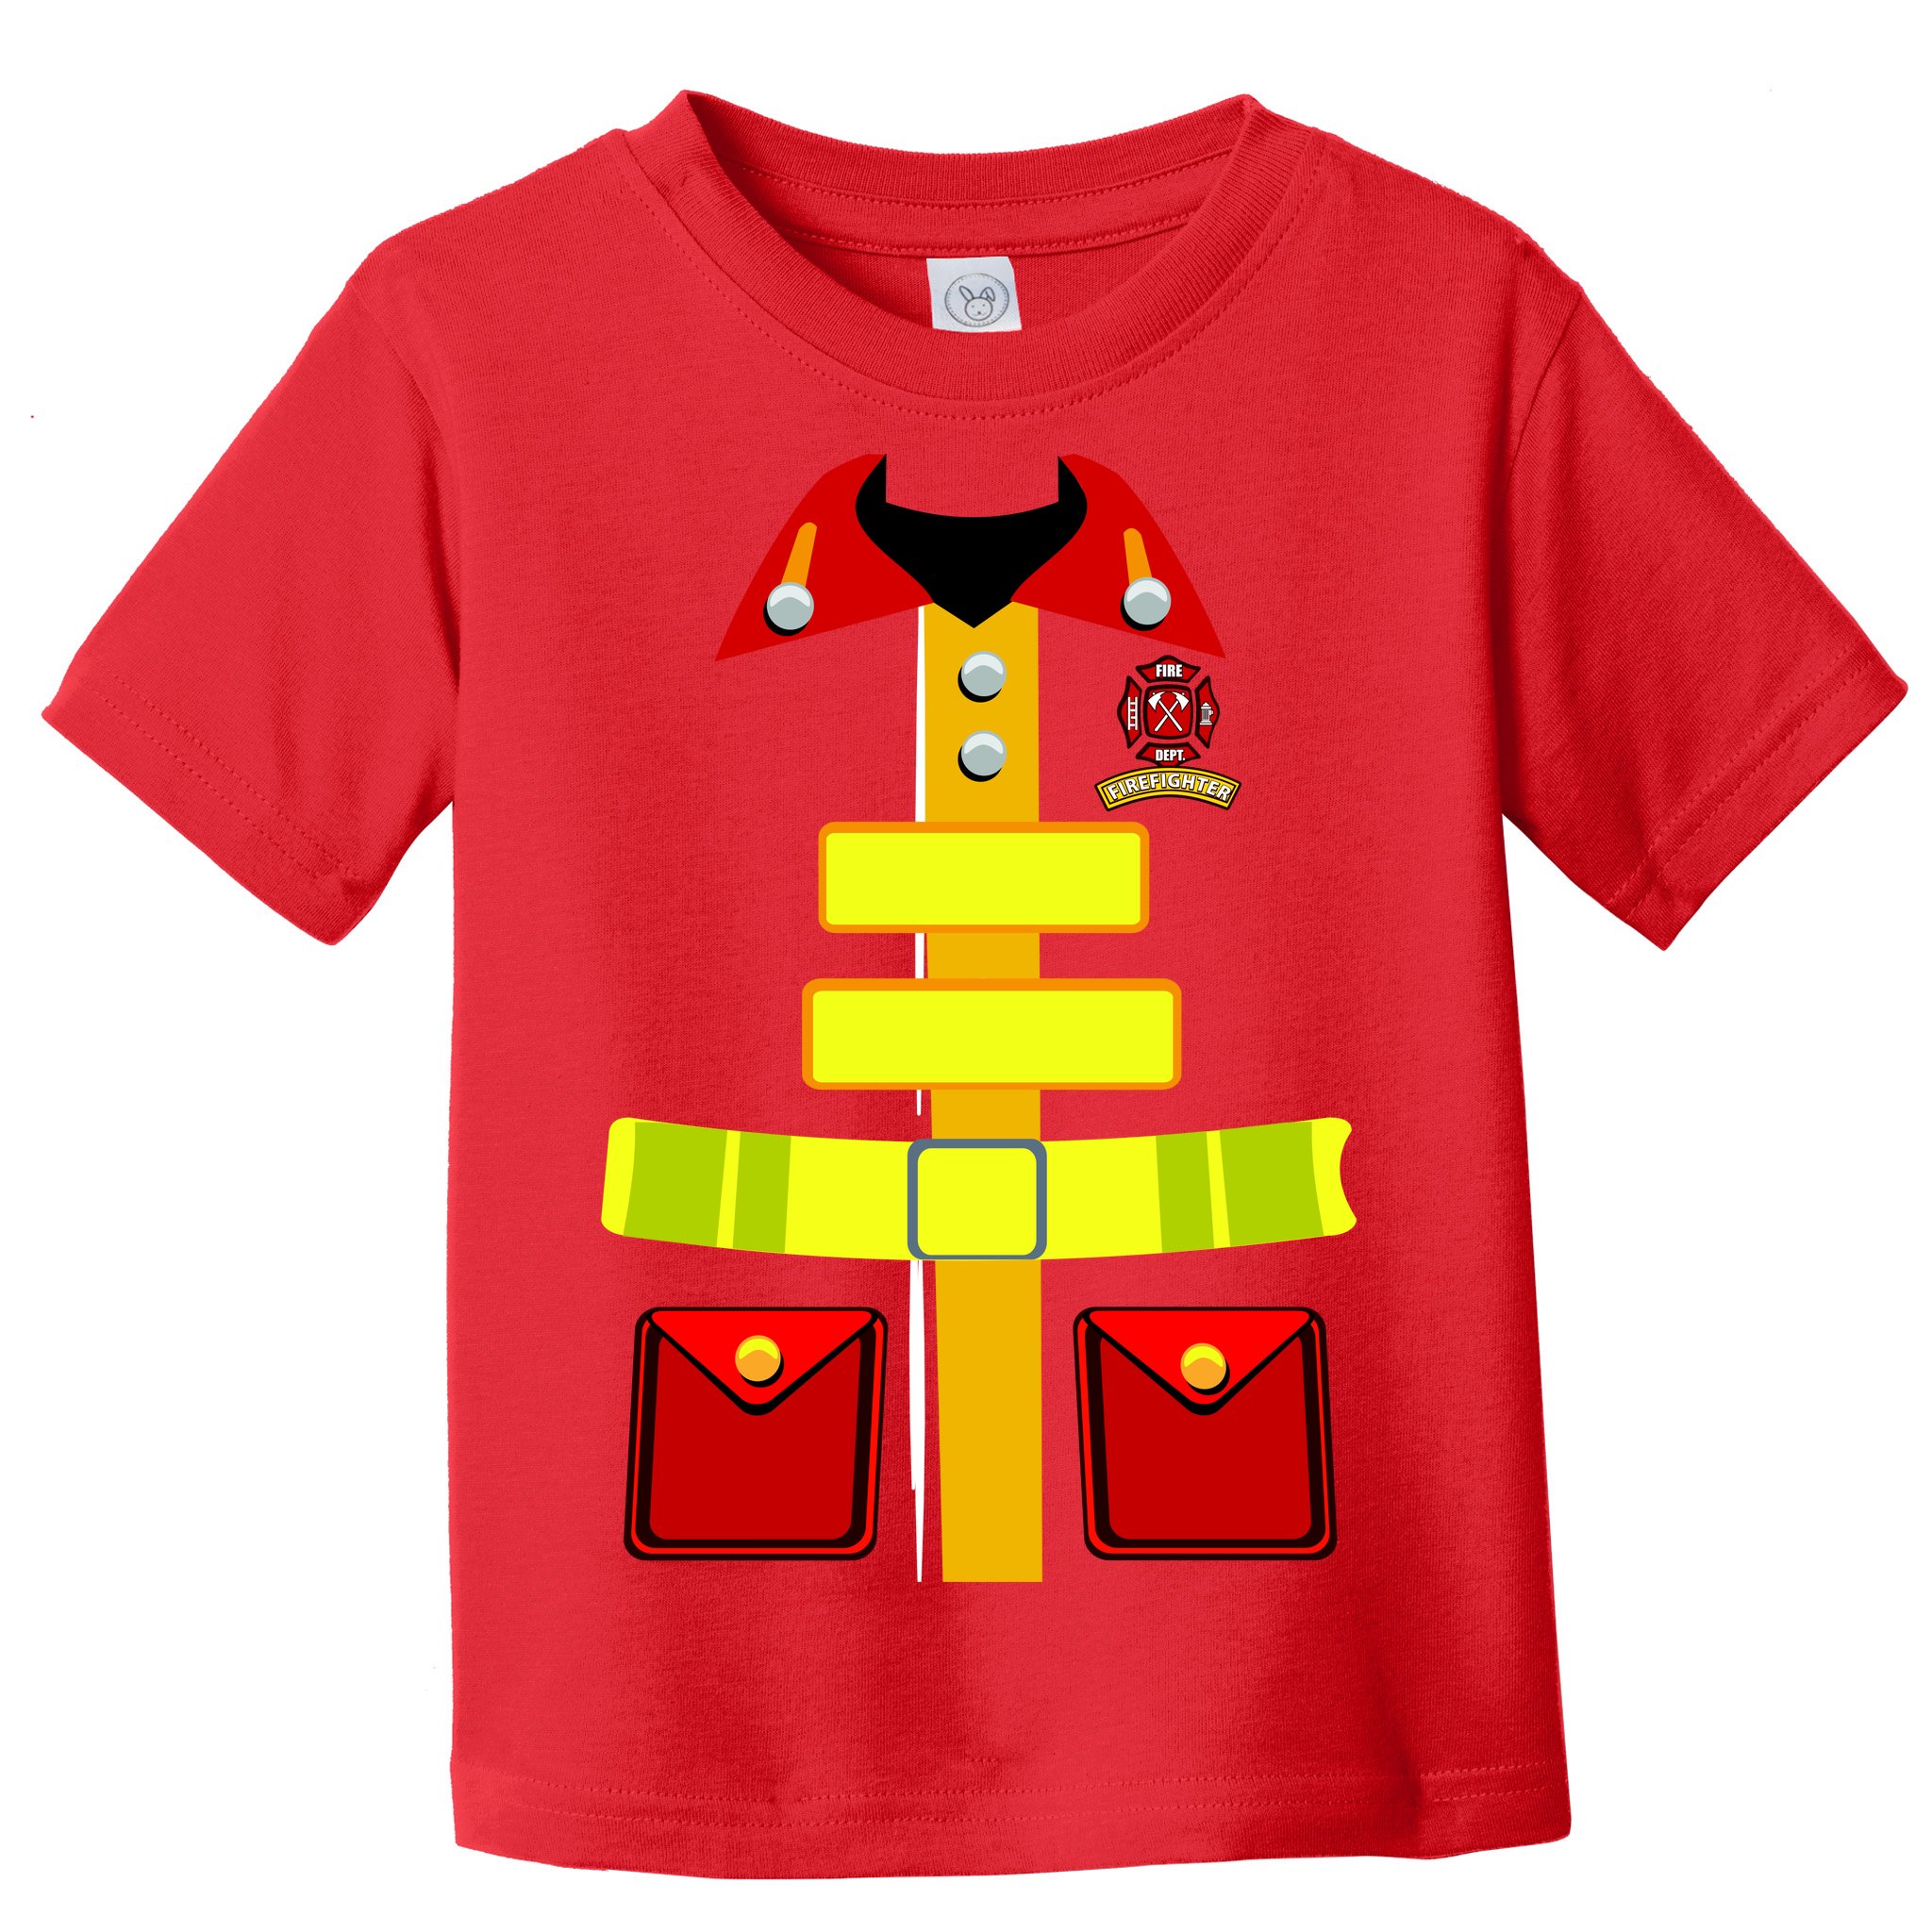 firefighter uniform shirts